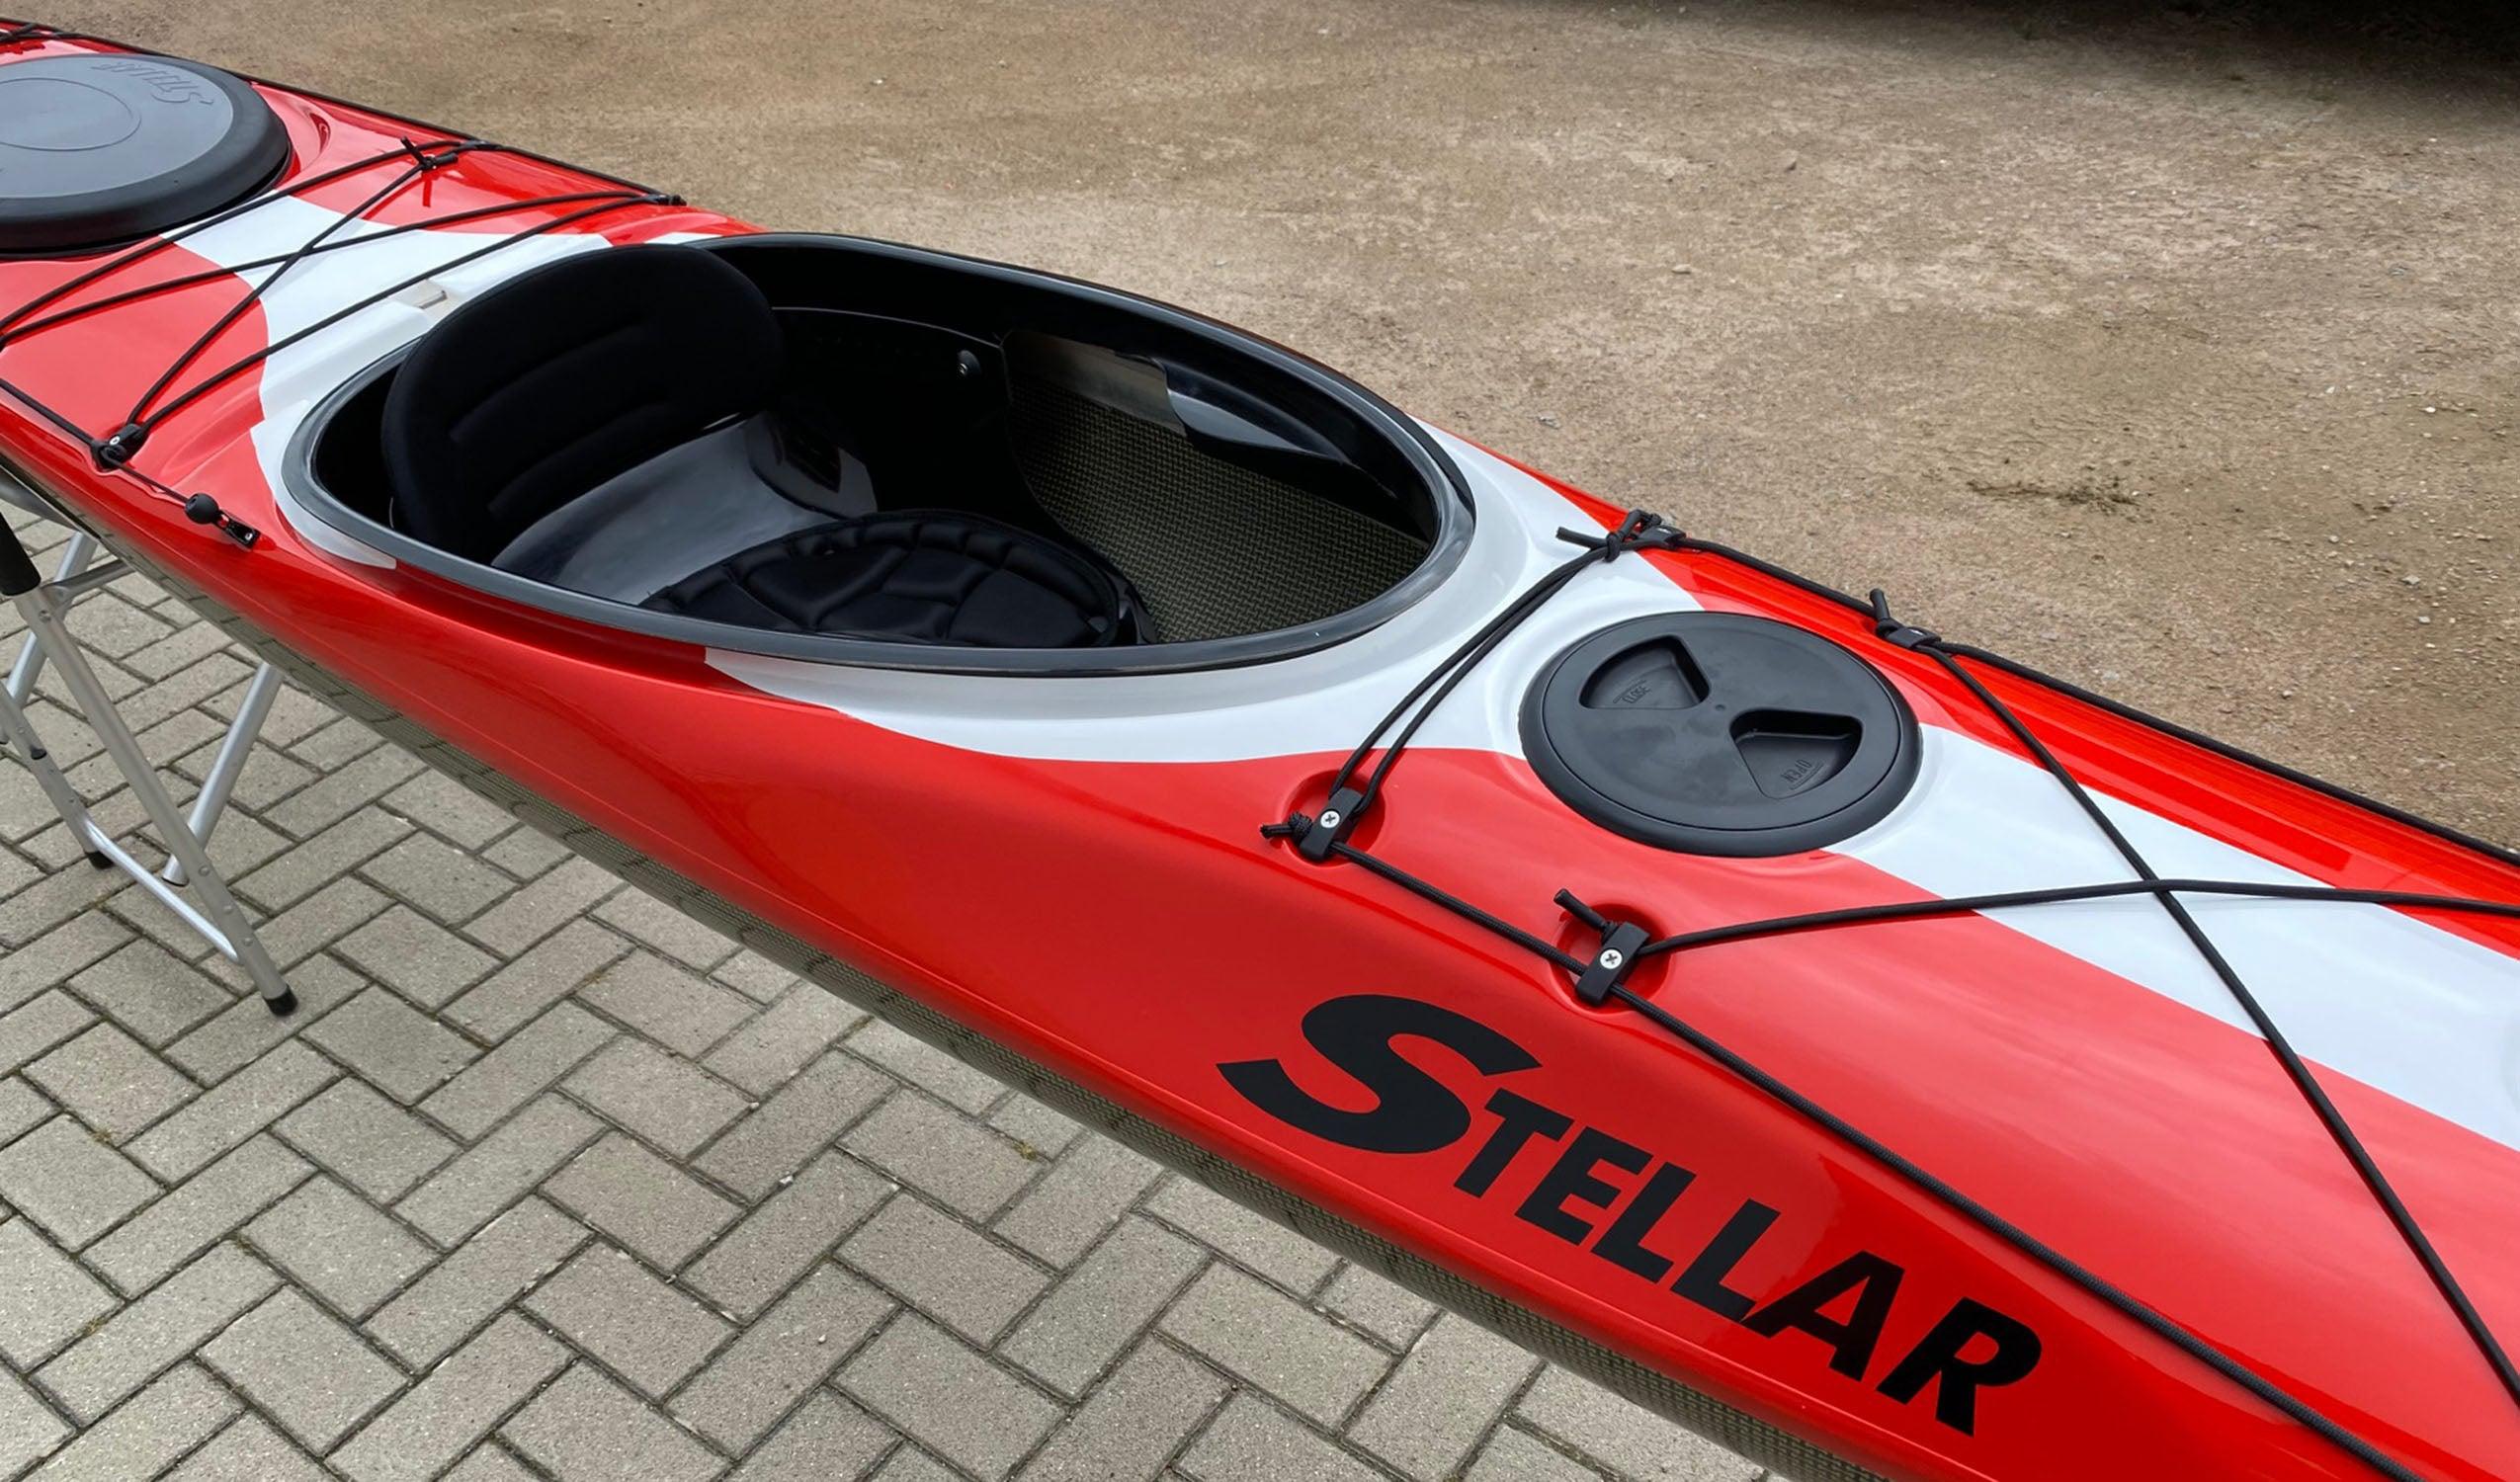 Produktbild von Kajak " S16 G2 Multisport-rot weiß " der Marke STELLAR Lightweight für 3190.00 €. Erhältlich online bei Lite Venture ( www.liteventure.de )